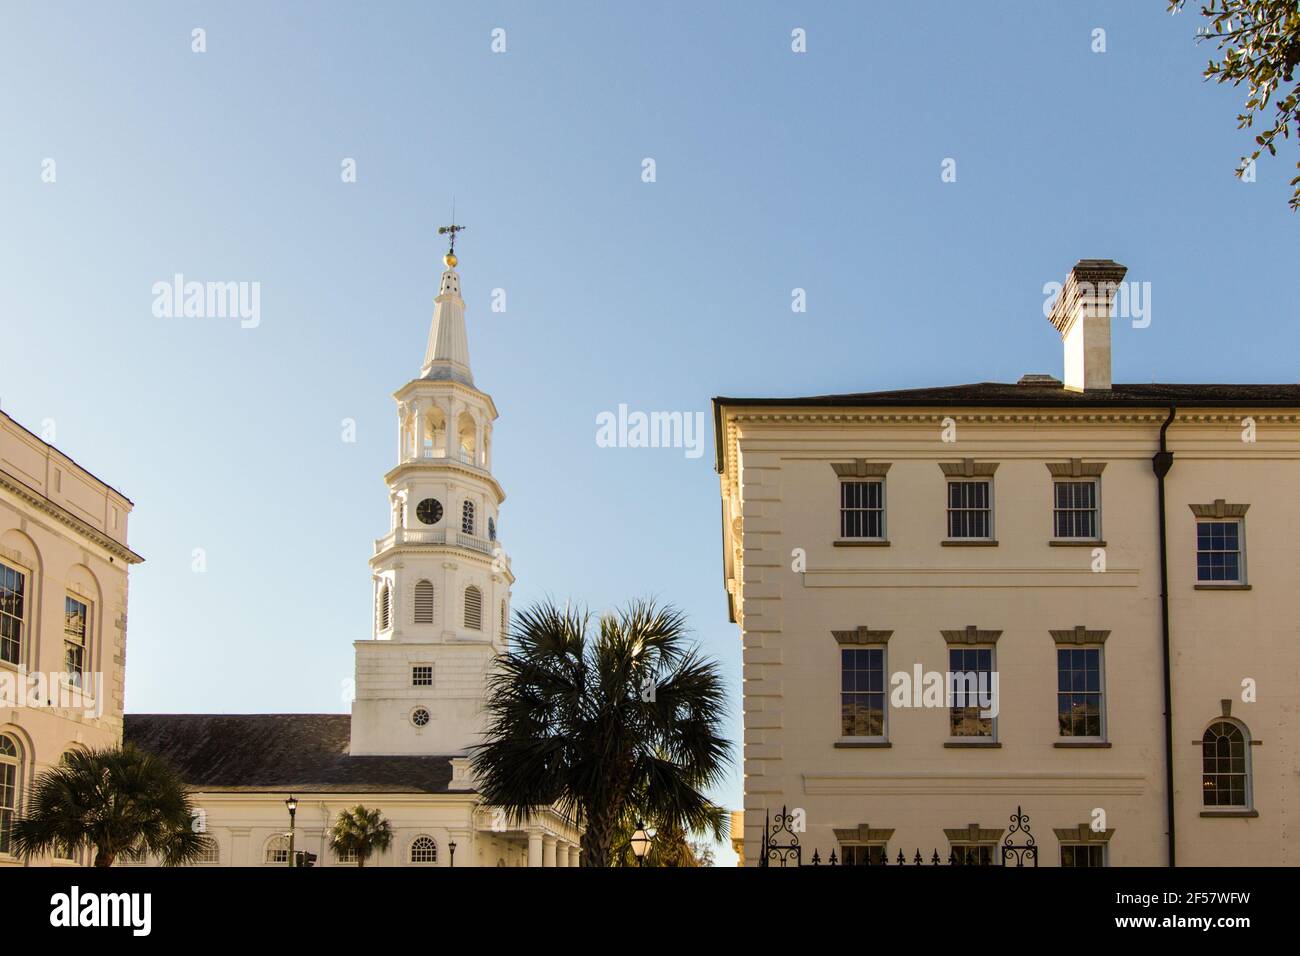 Los famosos cuatro rincones de la ley en Charleston. La intersección consiste  en una iglesia, un edificio federal, un edificio del condado y un edificio  de la ciudad Fotografía de stock -